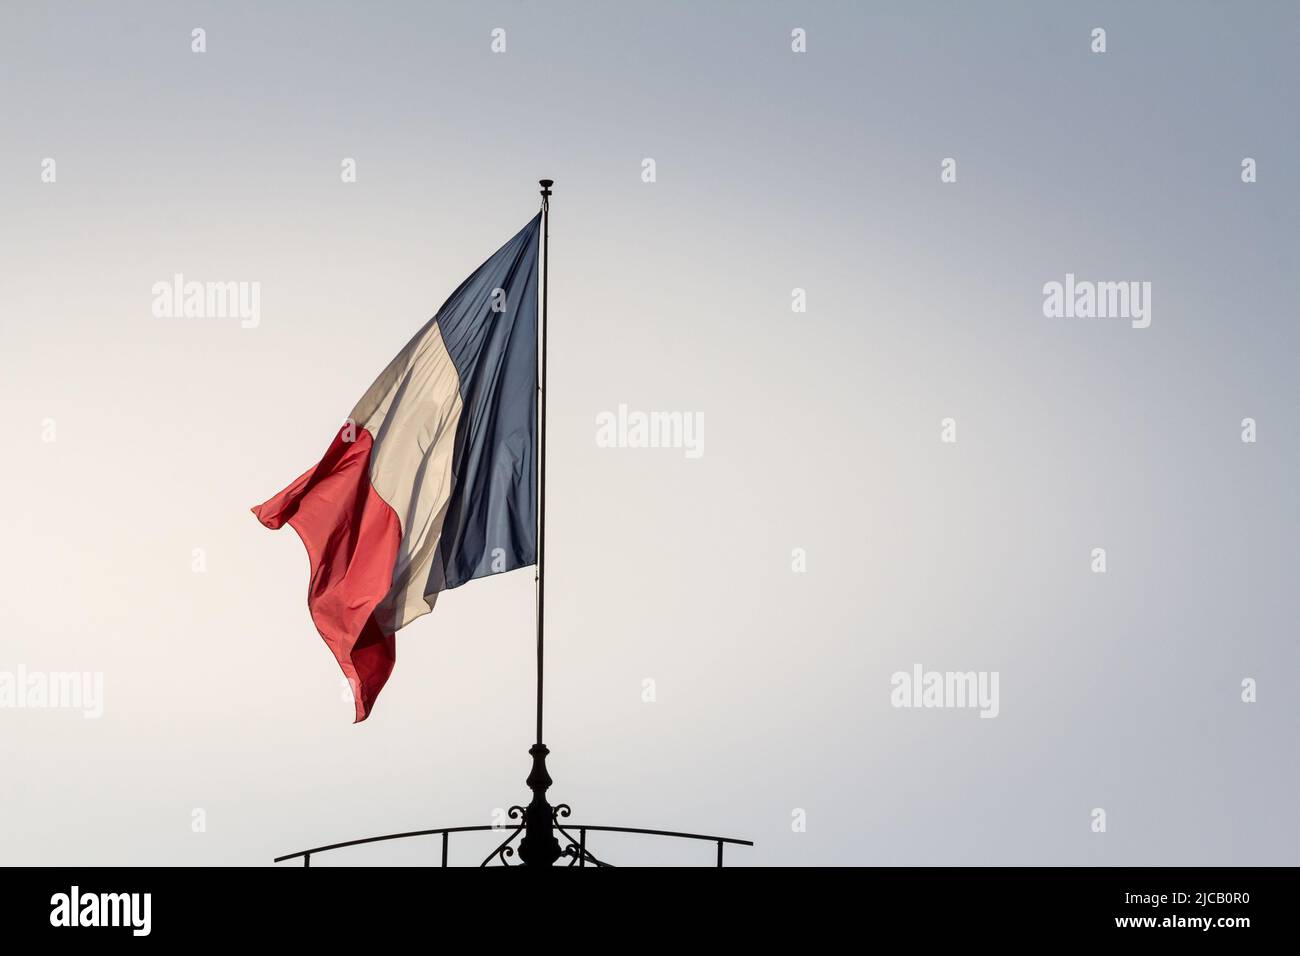 Bild einer französischen Flagge, die in der Luft winkt. Die Nationalflagge Frankreichs oder Drapeau francais ist eine dreifarbige Flagge mit drei vertikalen Bändern Farbe Stockfoto